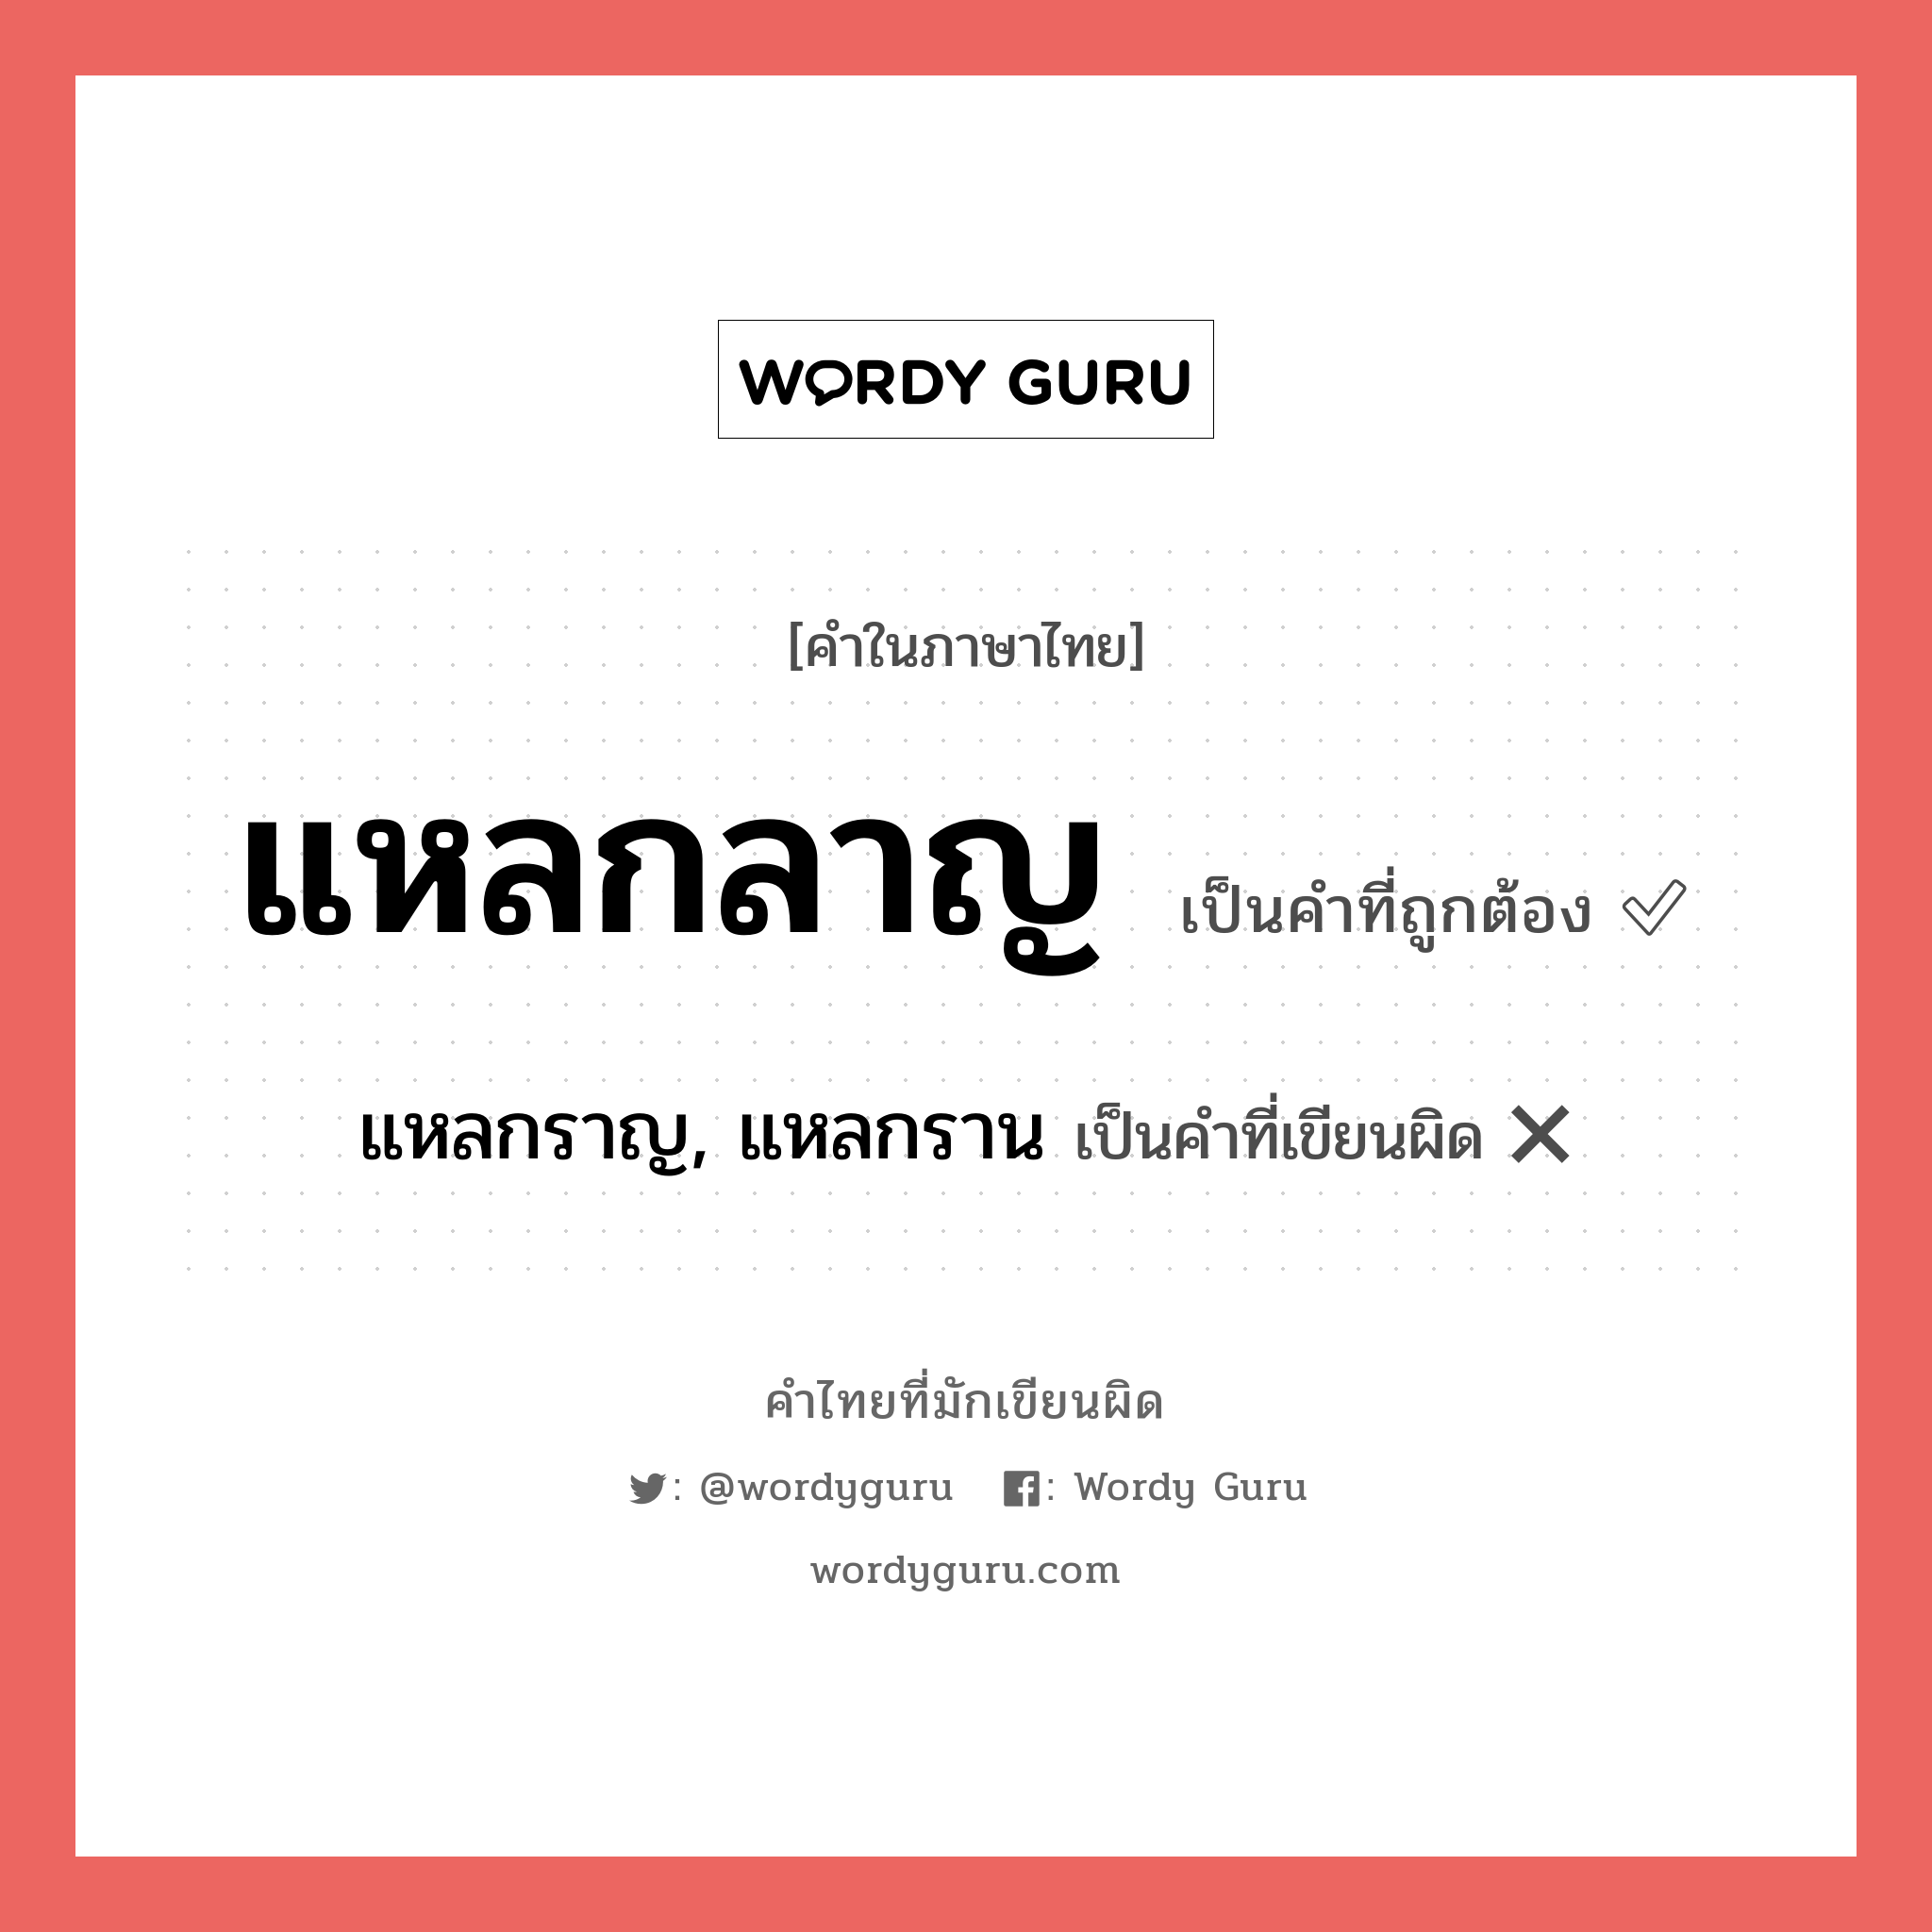 แหลกลาญ หรือ แหลกราญ, แหลกราน คำไหนเขียนถูก?, คำในภาษาไทยที่มักเขียนผิด แหลกลาญ คำที่ผิด ❌ แหลกราญ, แหลกราน